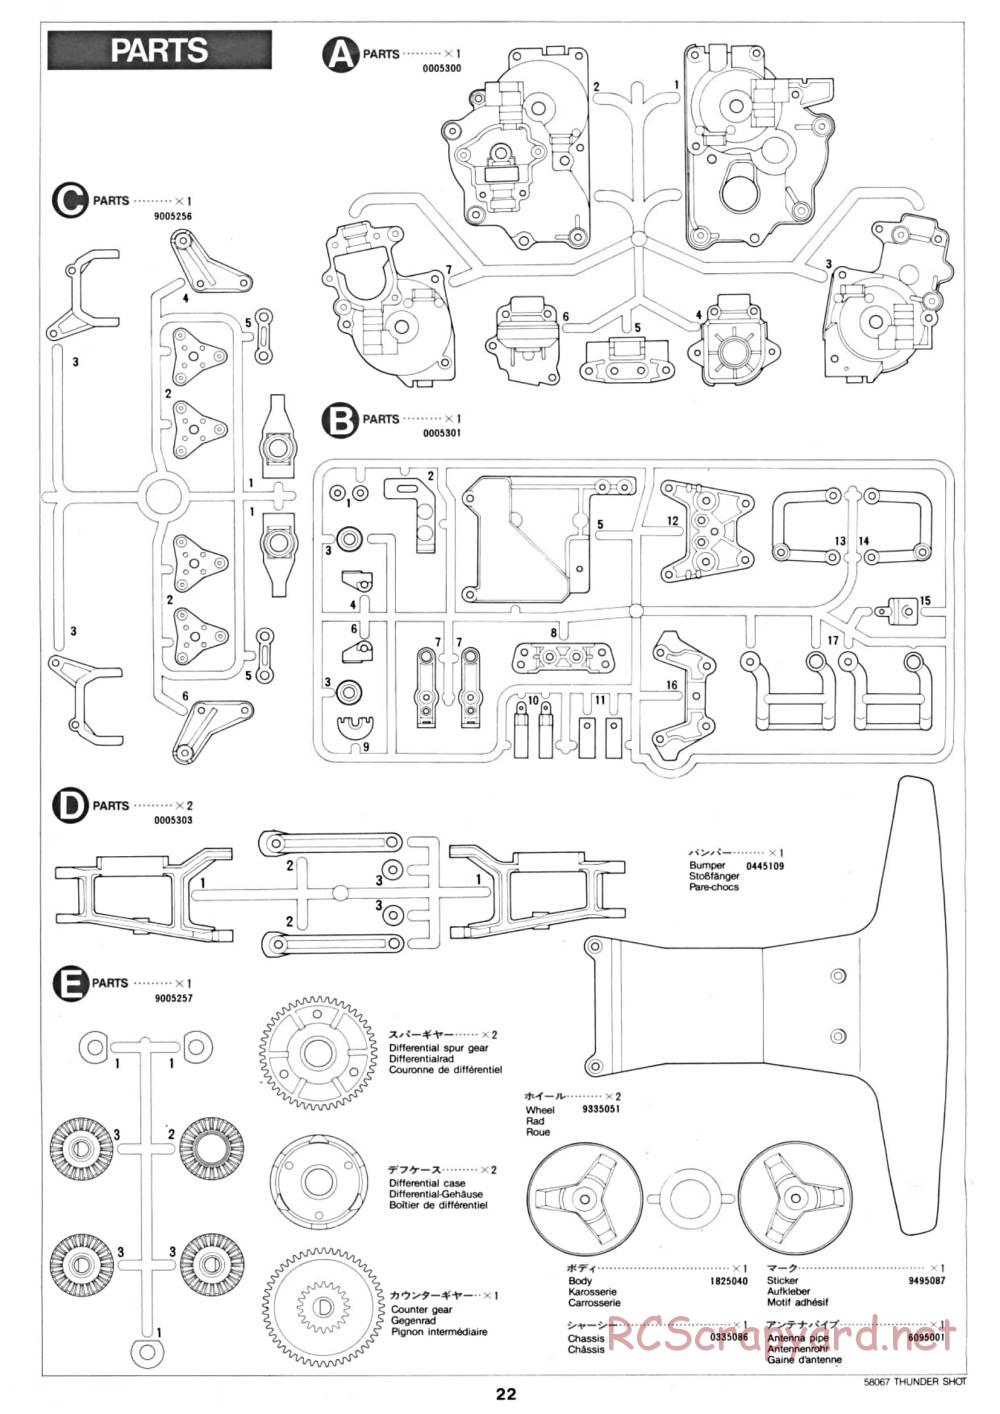 Tamiya - Thunder Shot - 58067 - Manual - Page 22